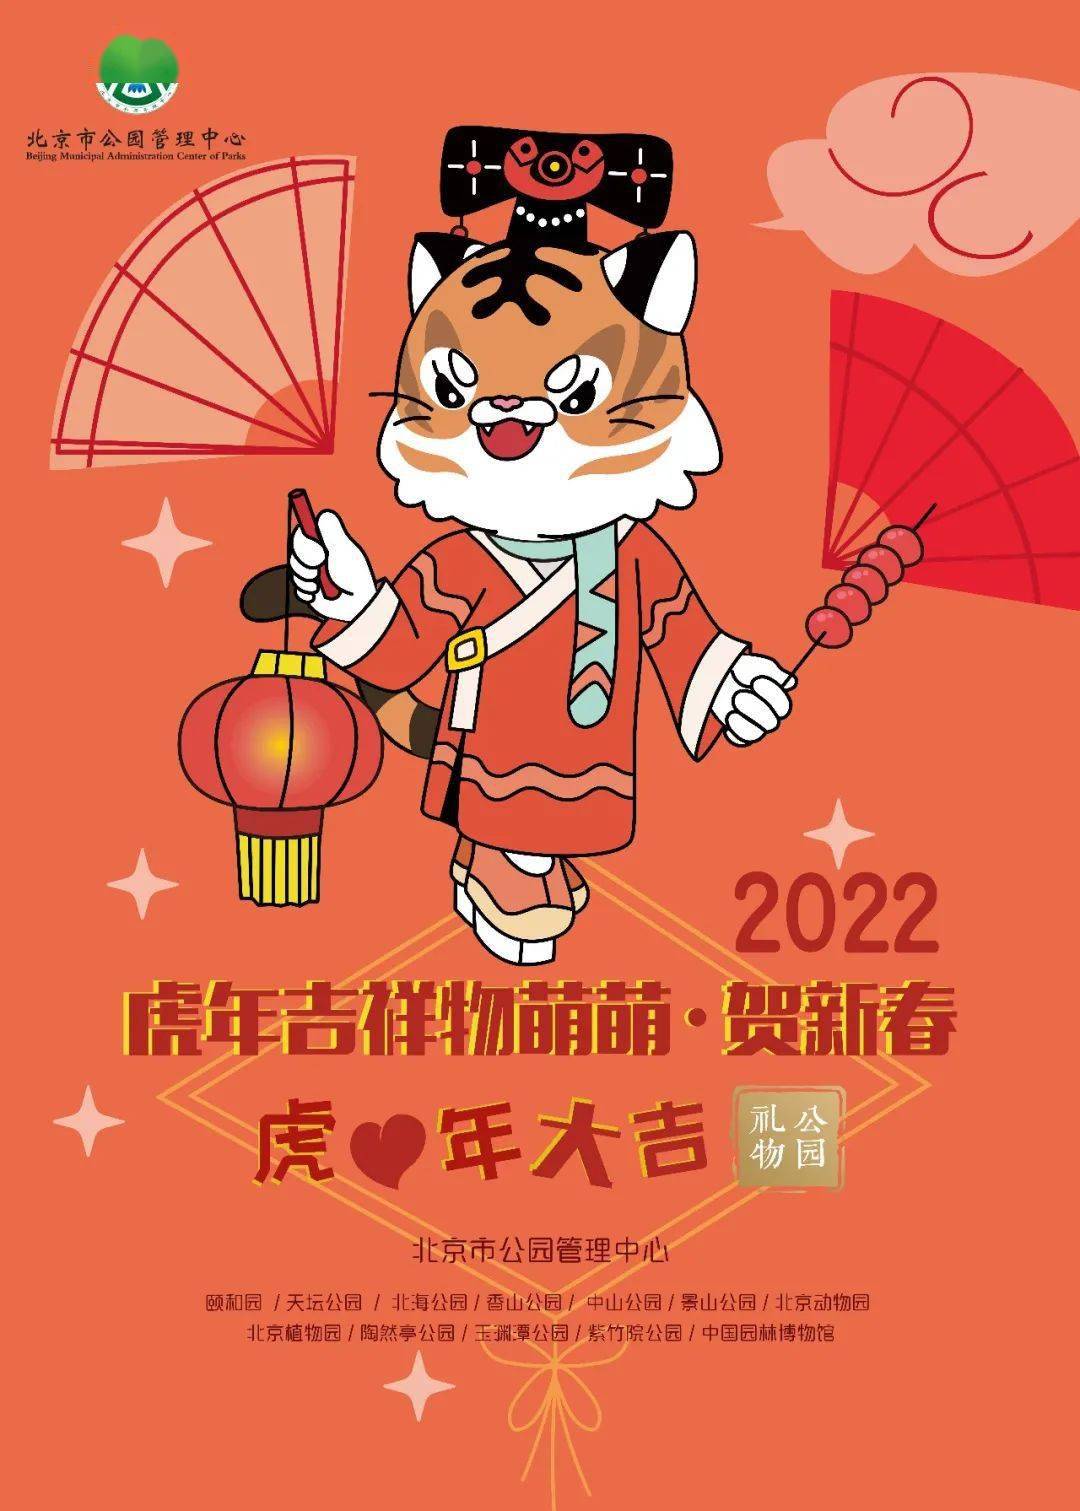 北京市属公园2022虎年生肖吉祥物萌萌正式上线啦